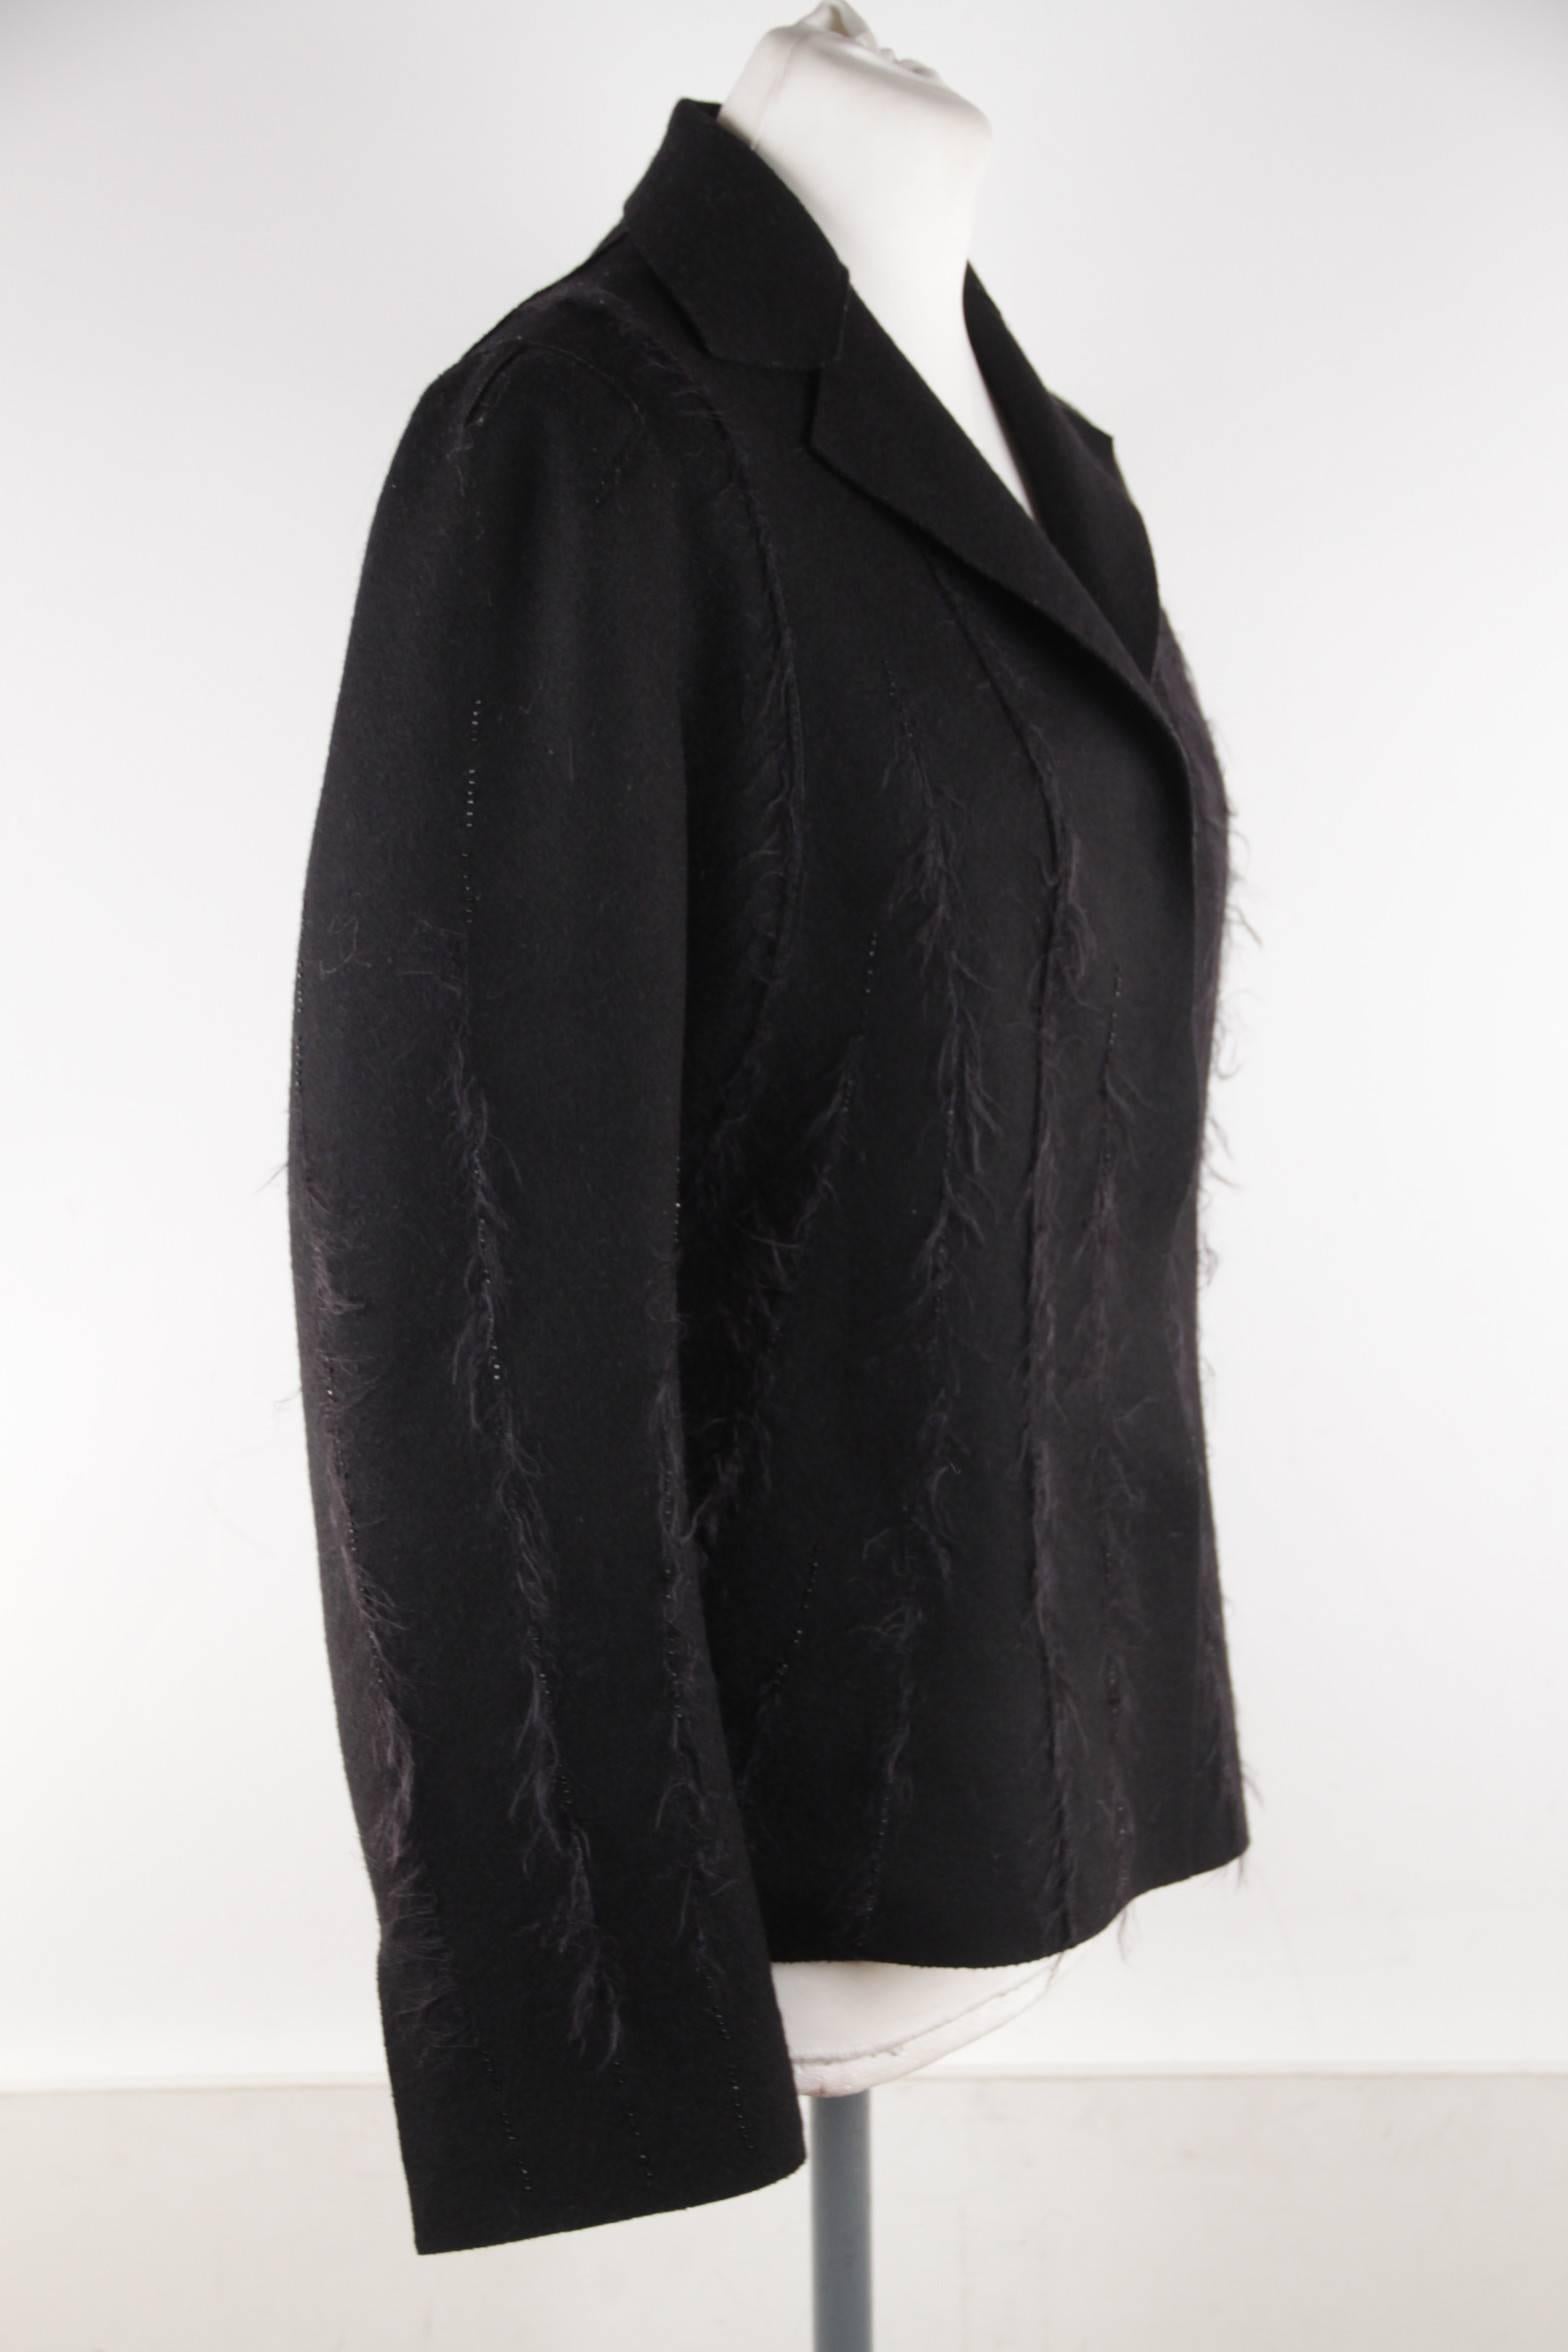 ALBERTA FERRETTI Black Wool Blend BLAZER Jacket w/ Frayed Trims SZ 42 IT 1